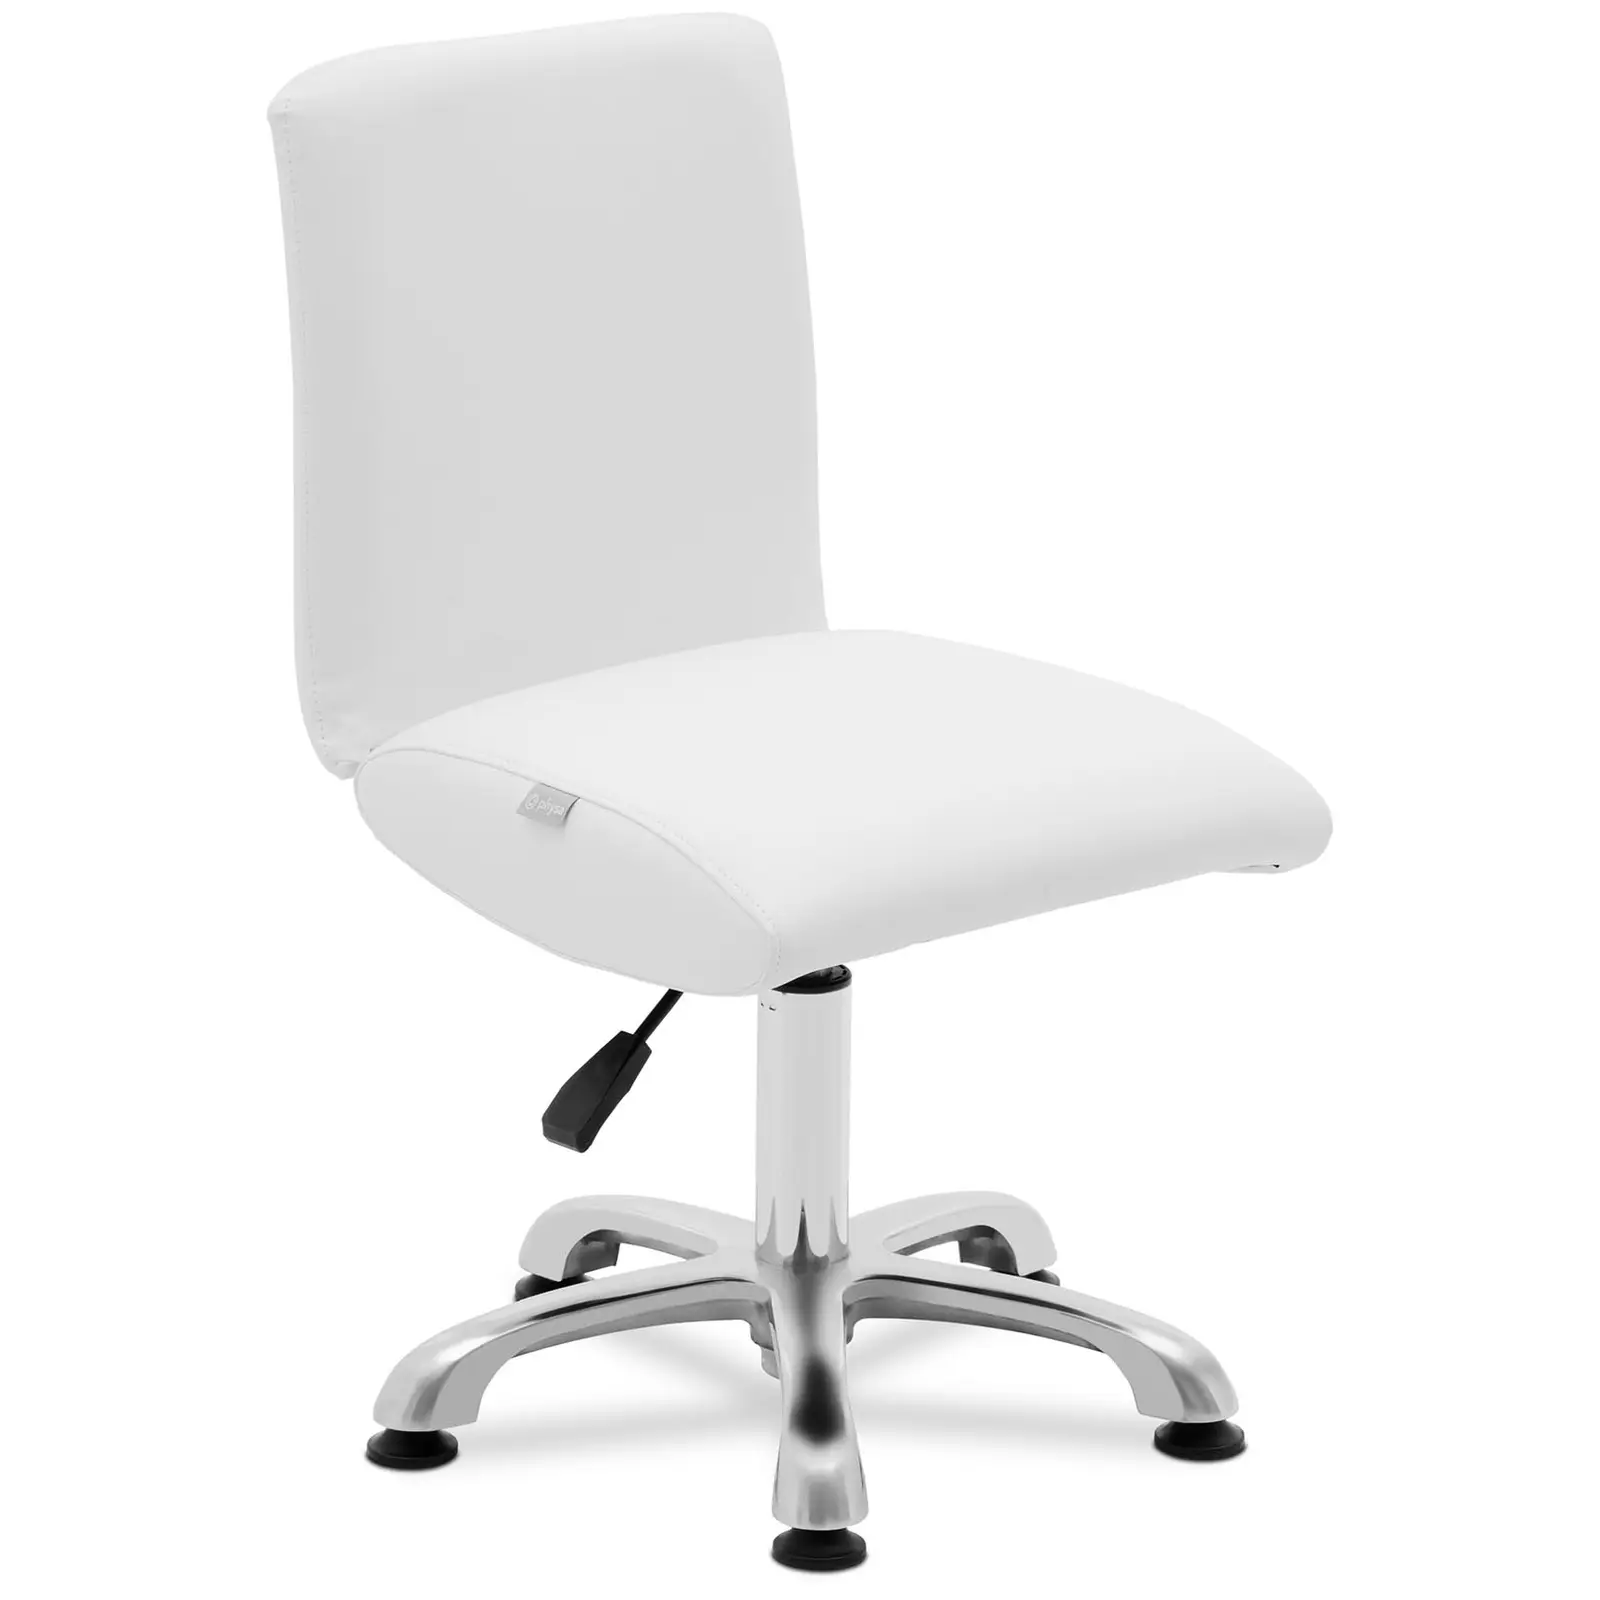 Cadeira para salão de beleza - 38 - 52 cm - 150 kg - branco